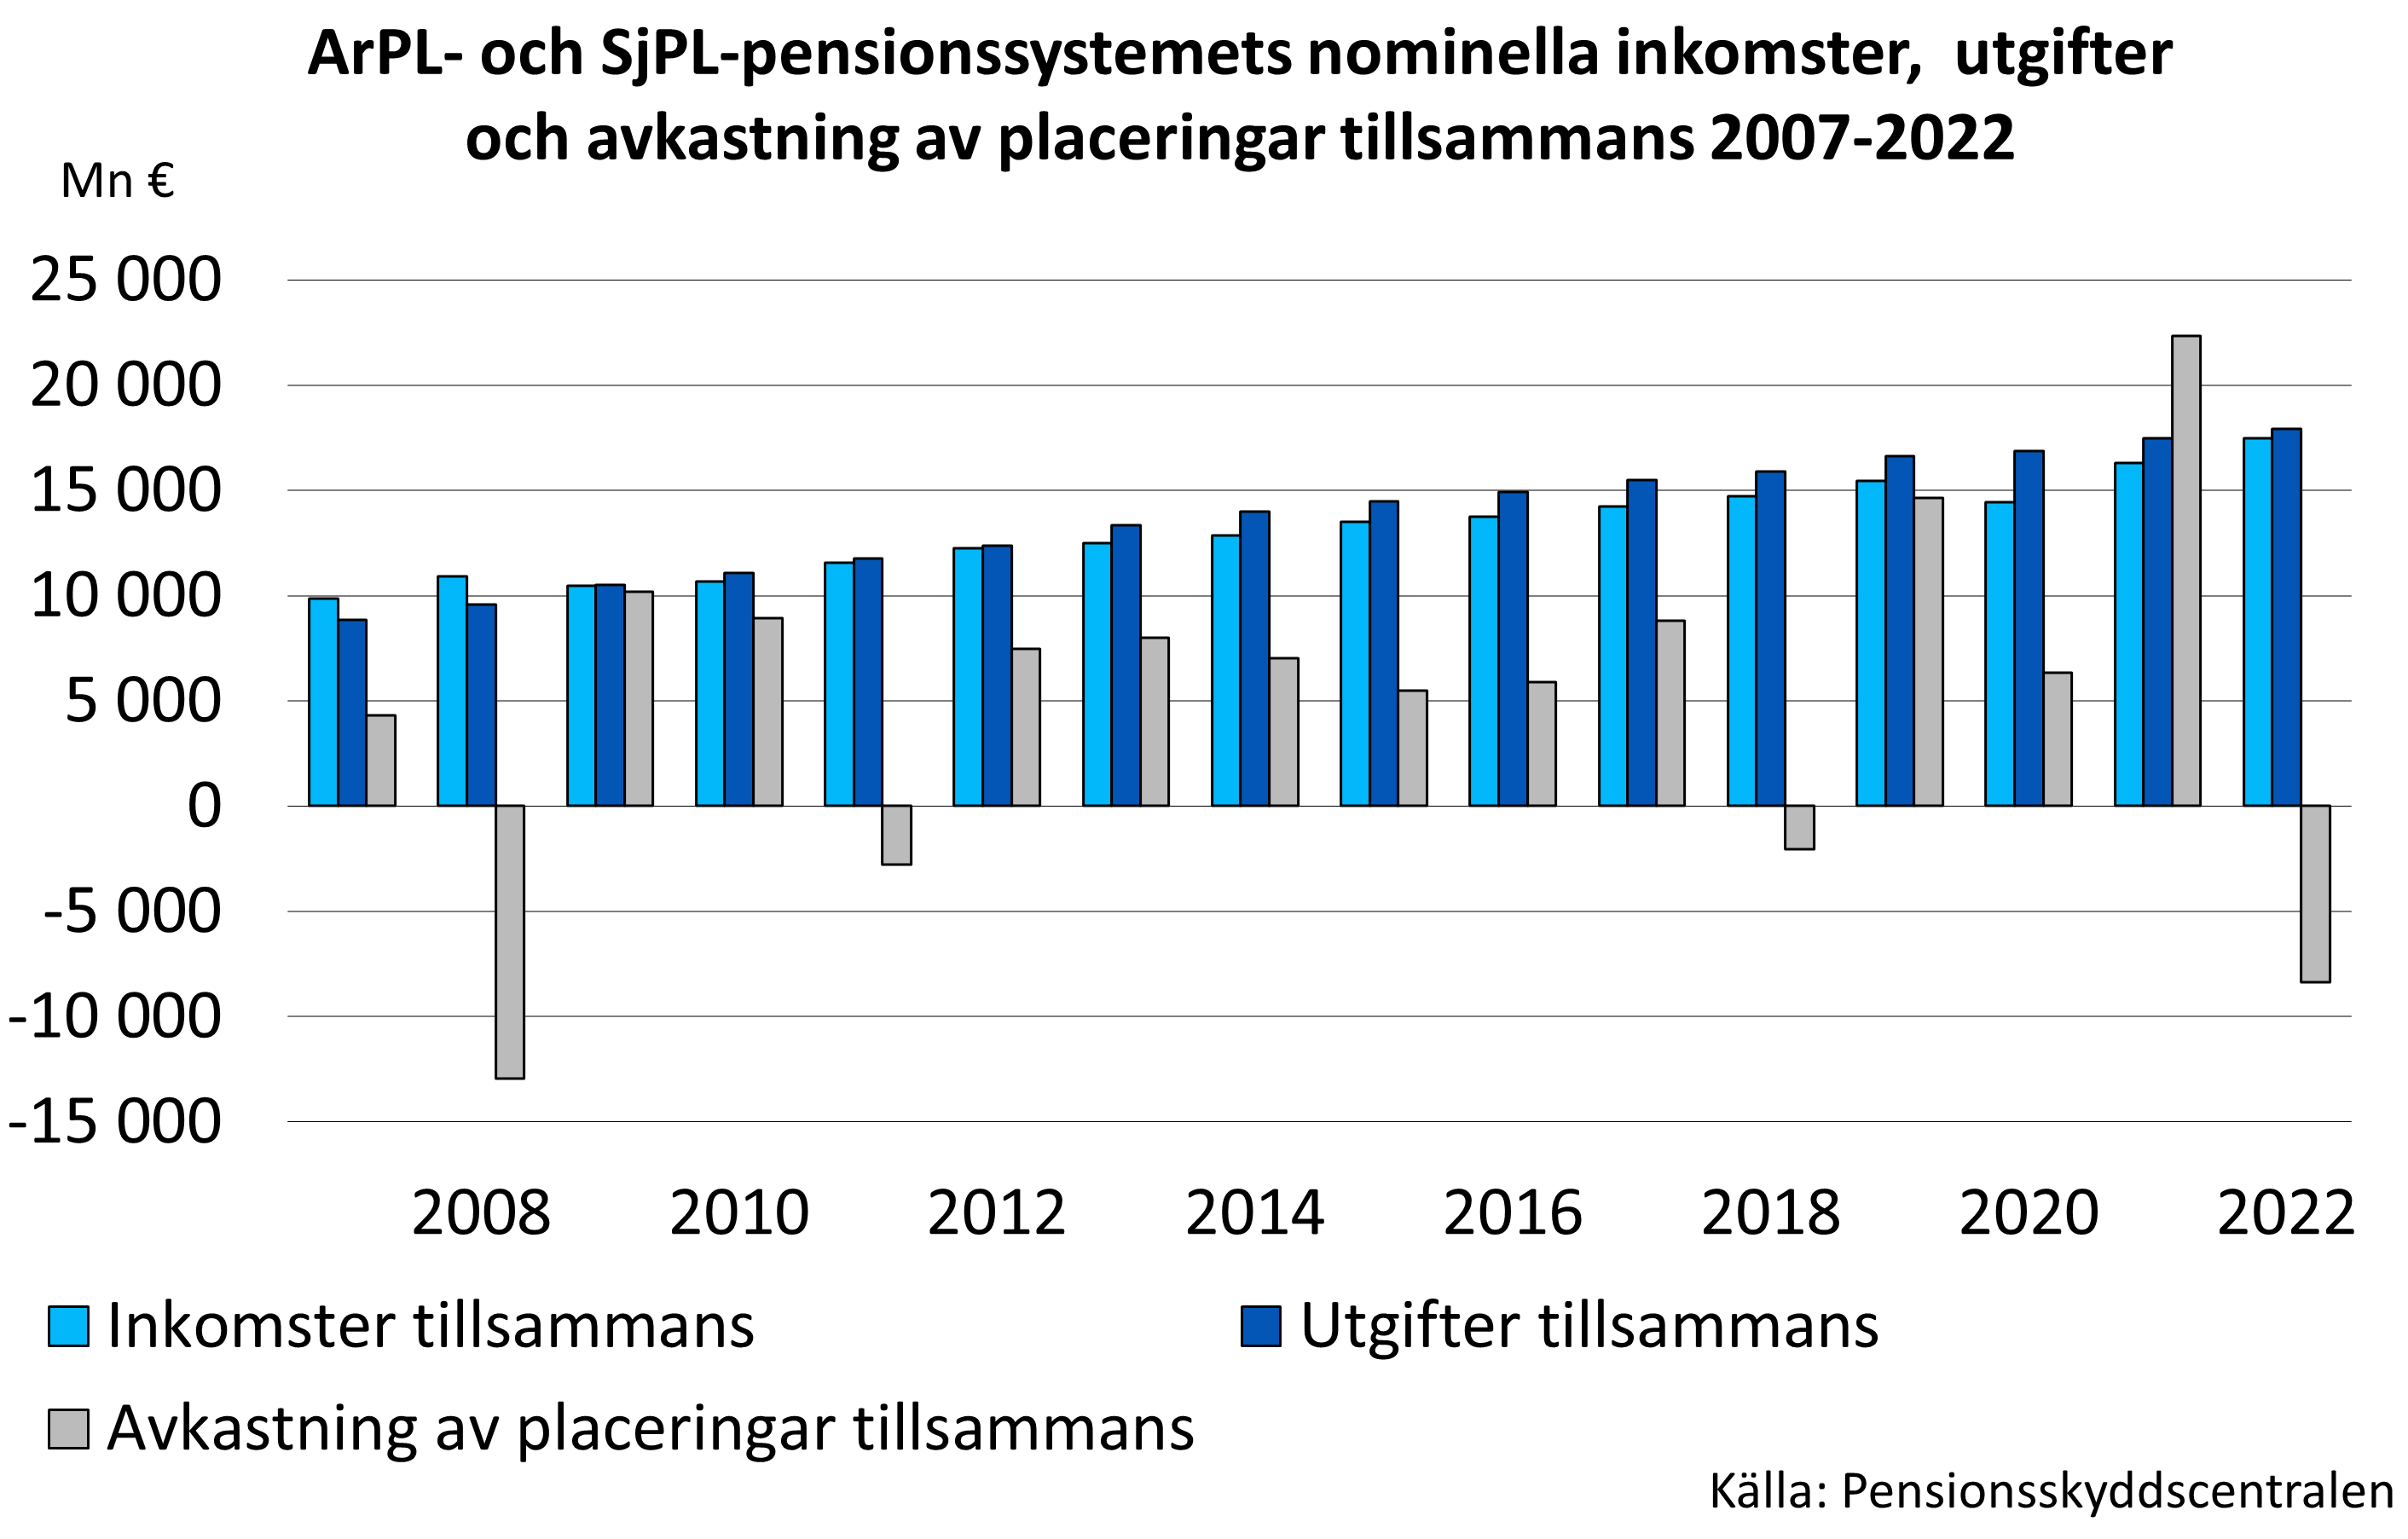 ArPL- och SjPL-pensionssystemets nominella inkomster,  utgifter och avkastning av placeringar tillsammans 2007-2020